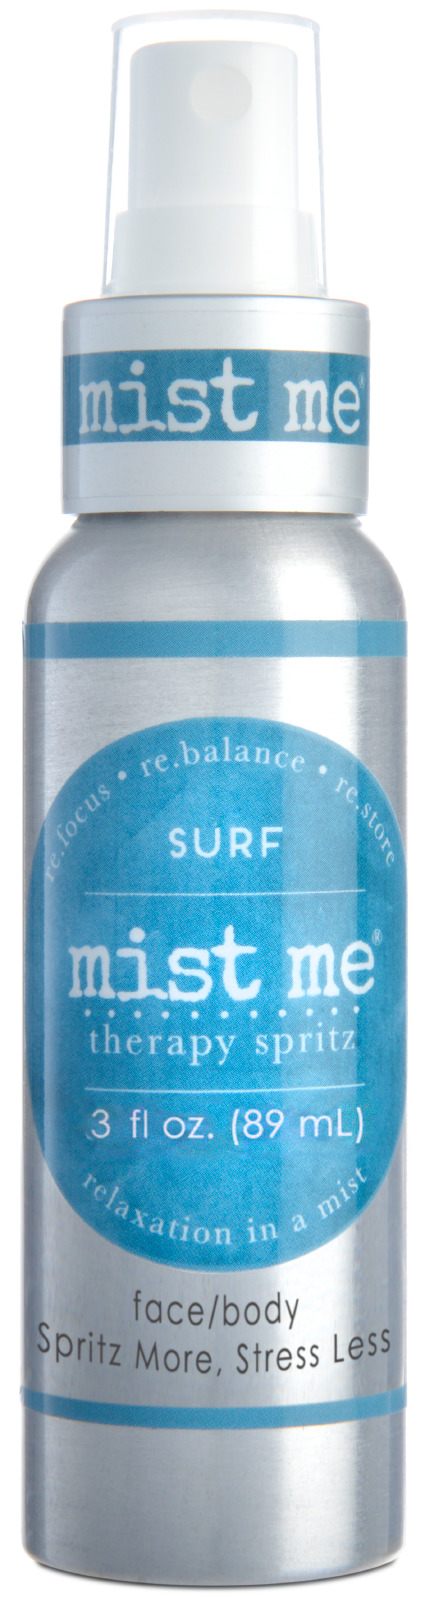 Surf Mist Me- 3.0 oz.